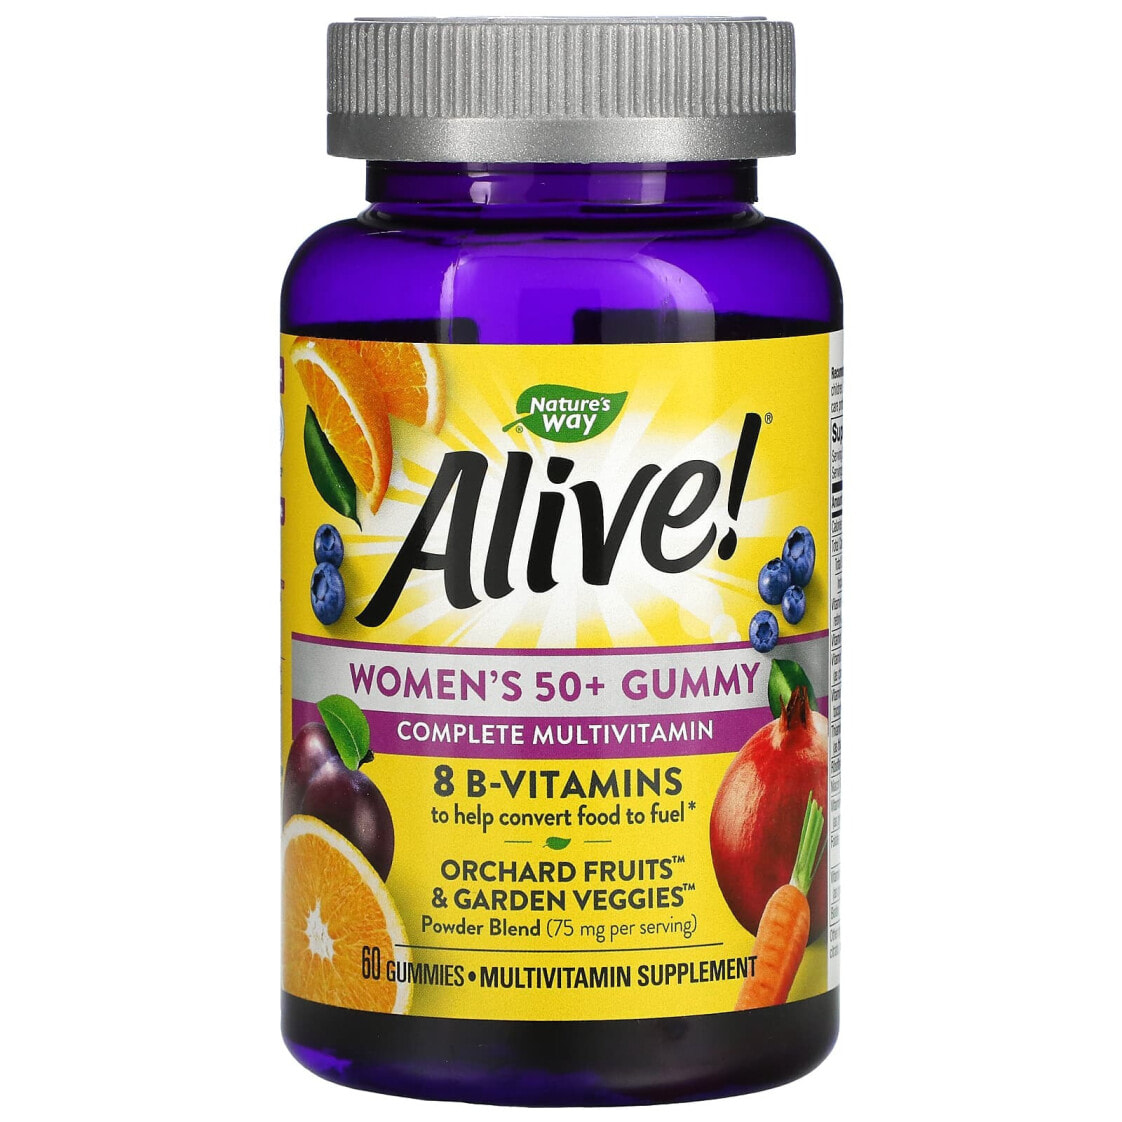 Женщинам после 60 витамины отзывы. Nature's way, Alive! Жевательные витамины для женщин. Alive витамины 8 b-Vitamins Womens Gummy. Alive 50+ витамины для женщин. Таблетки nature's way Alive! Kids Multivitamin.